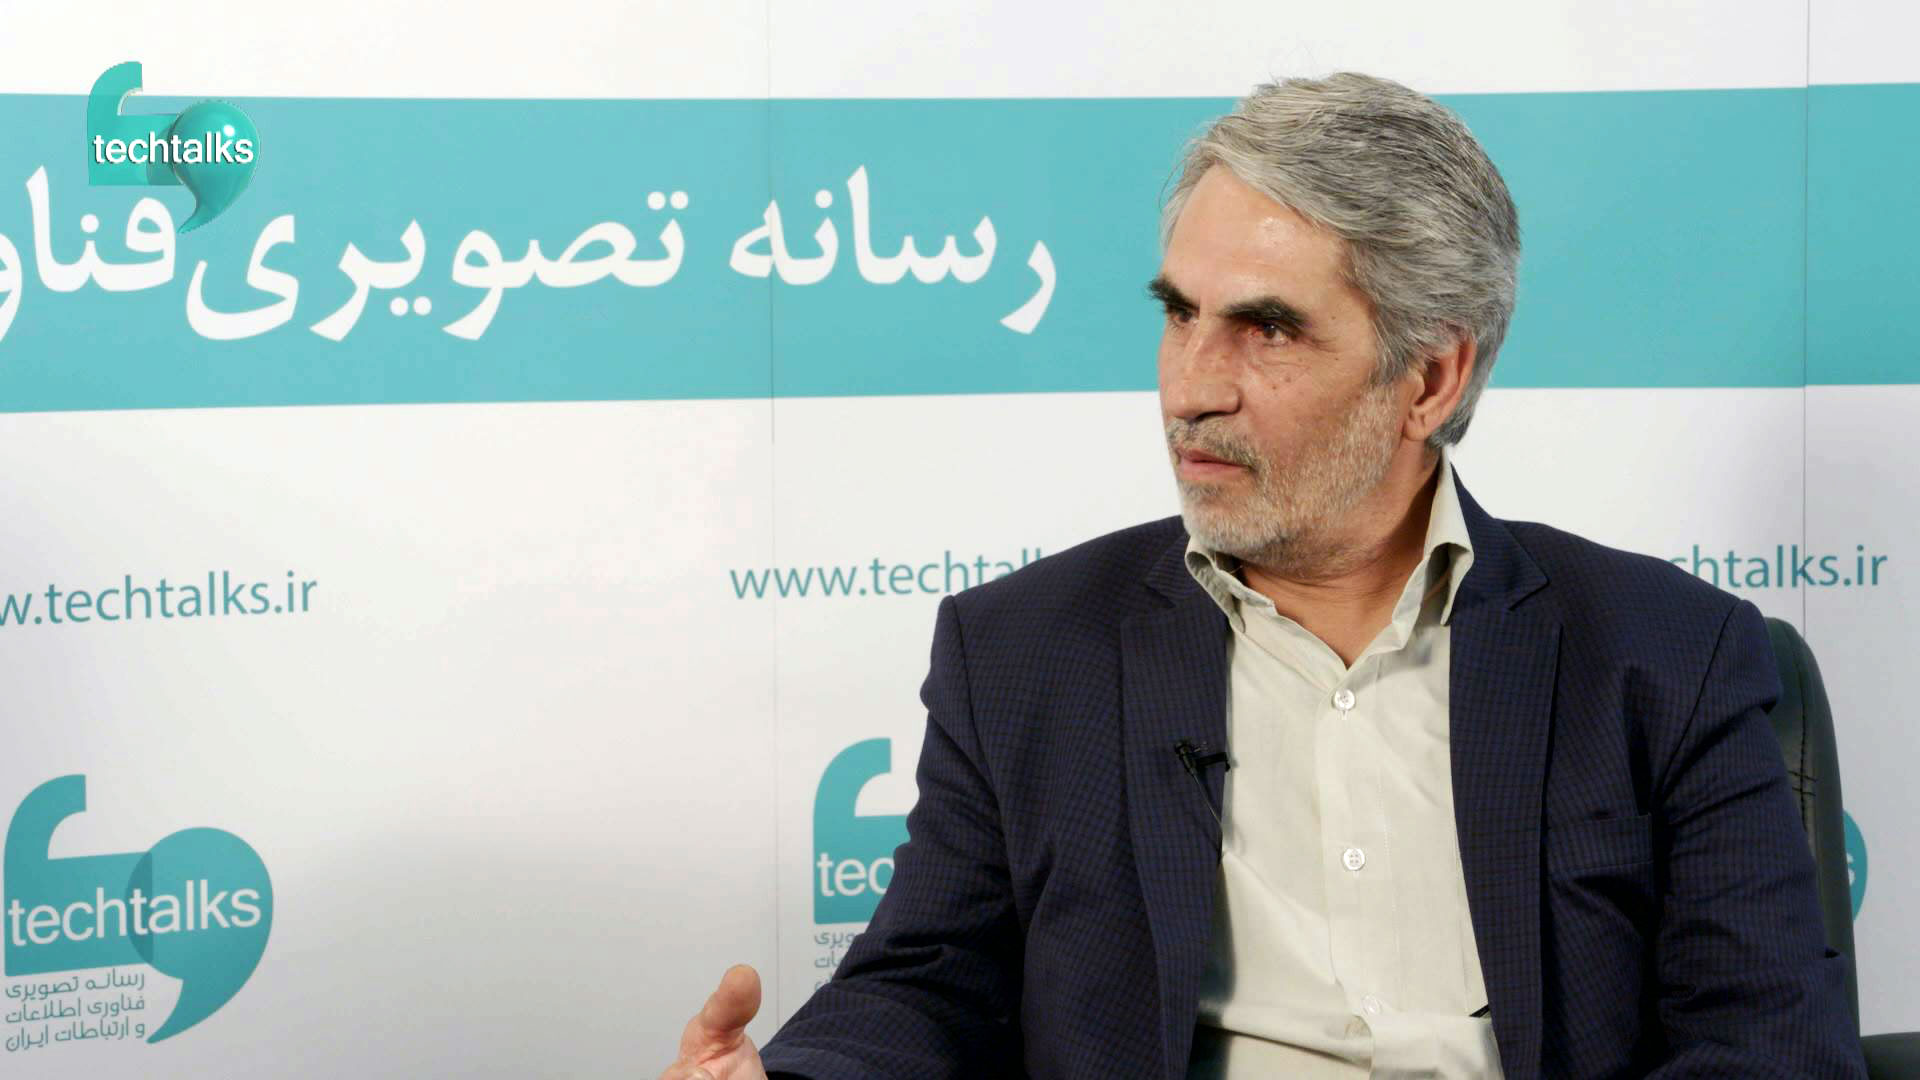 تک تاکس – گفتگو با محمد ایزدی، فناوری ارتباطات سیار اشتاد پارس – techtalks.ir